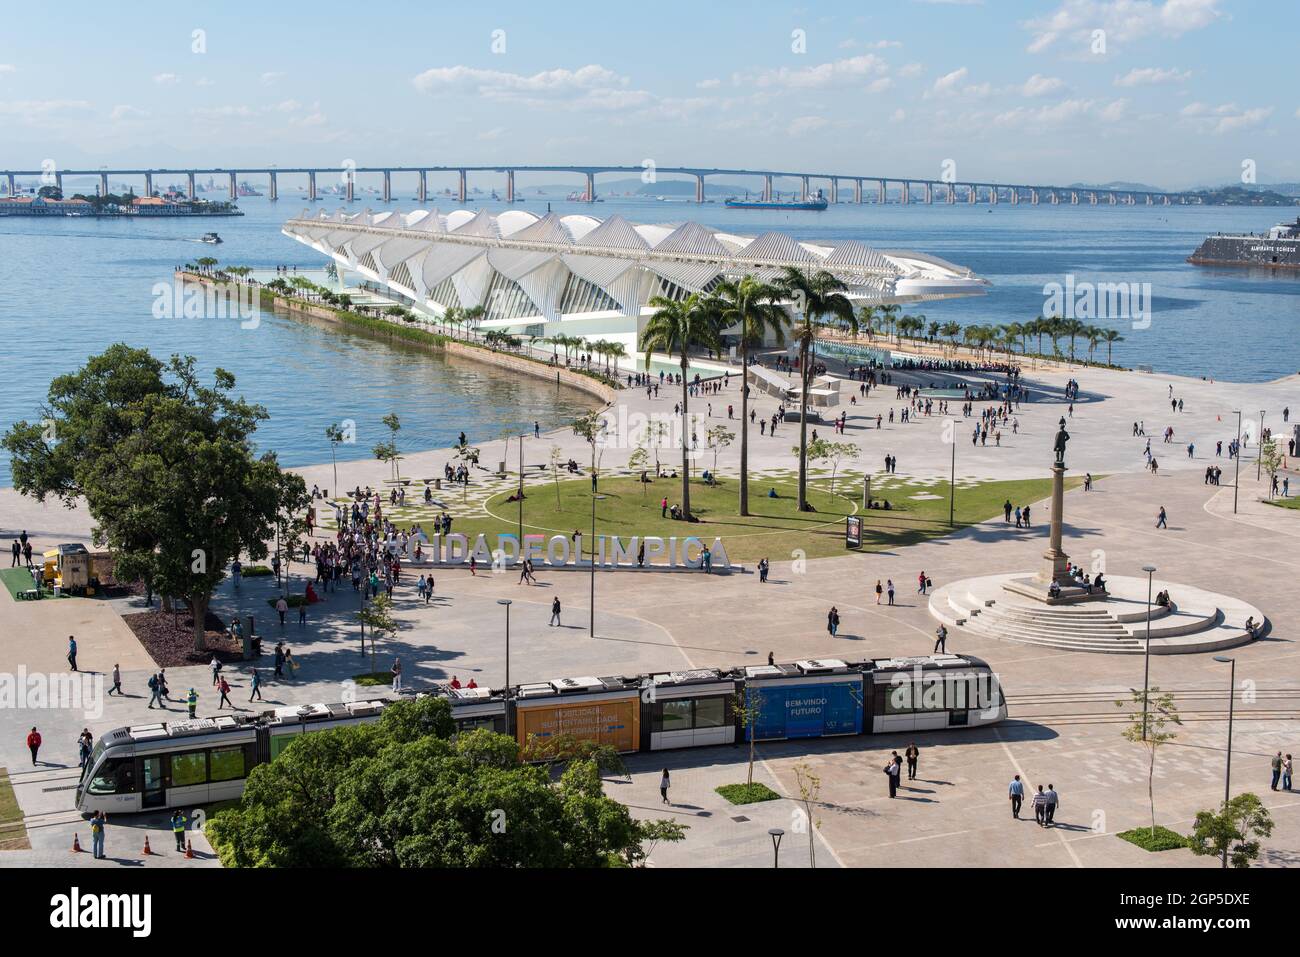 RIO DE JANEIRO, BRASILIEN - 14. JUNI 2016: Neue Stadtbahn VLT am Maua-Platz vorbei. Vor kurzem eröffnet, ist es das neueste Verkehrsmittel des öffentlichen Verkehrs. Stockfoto